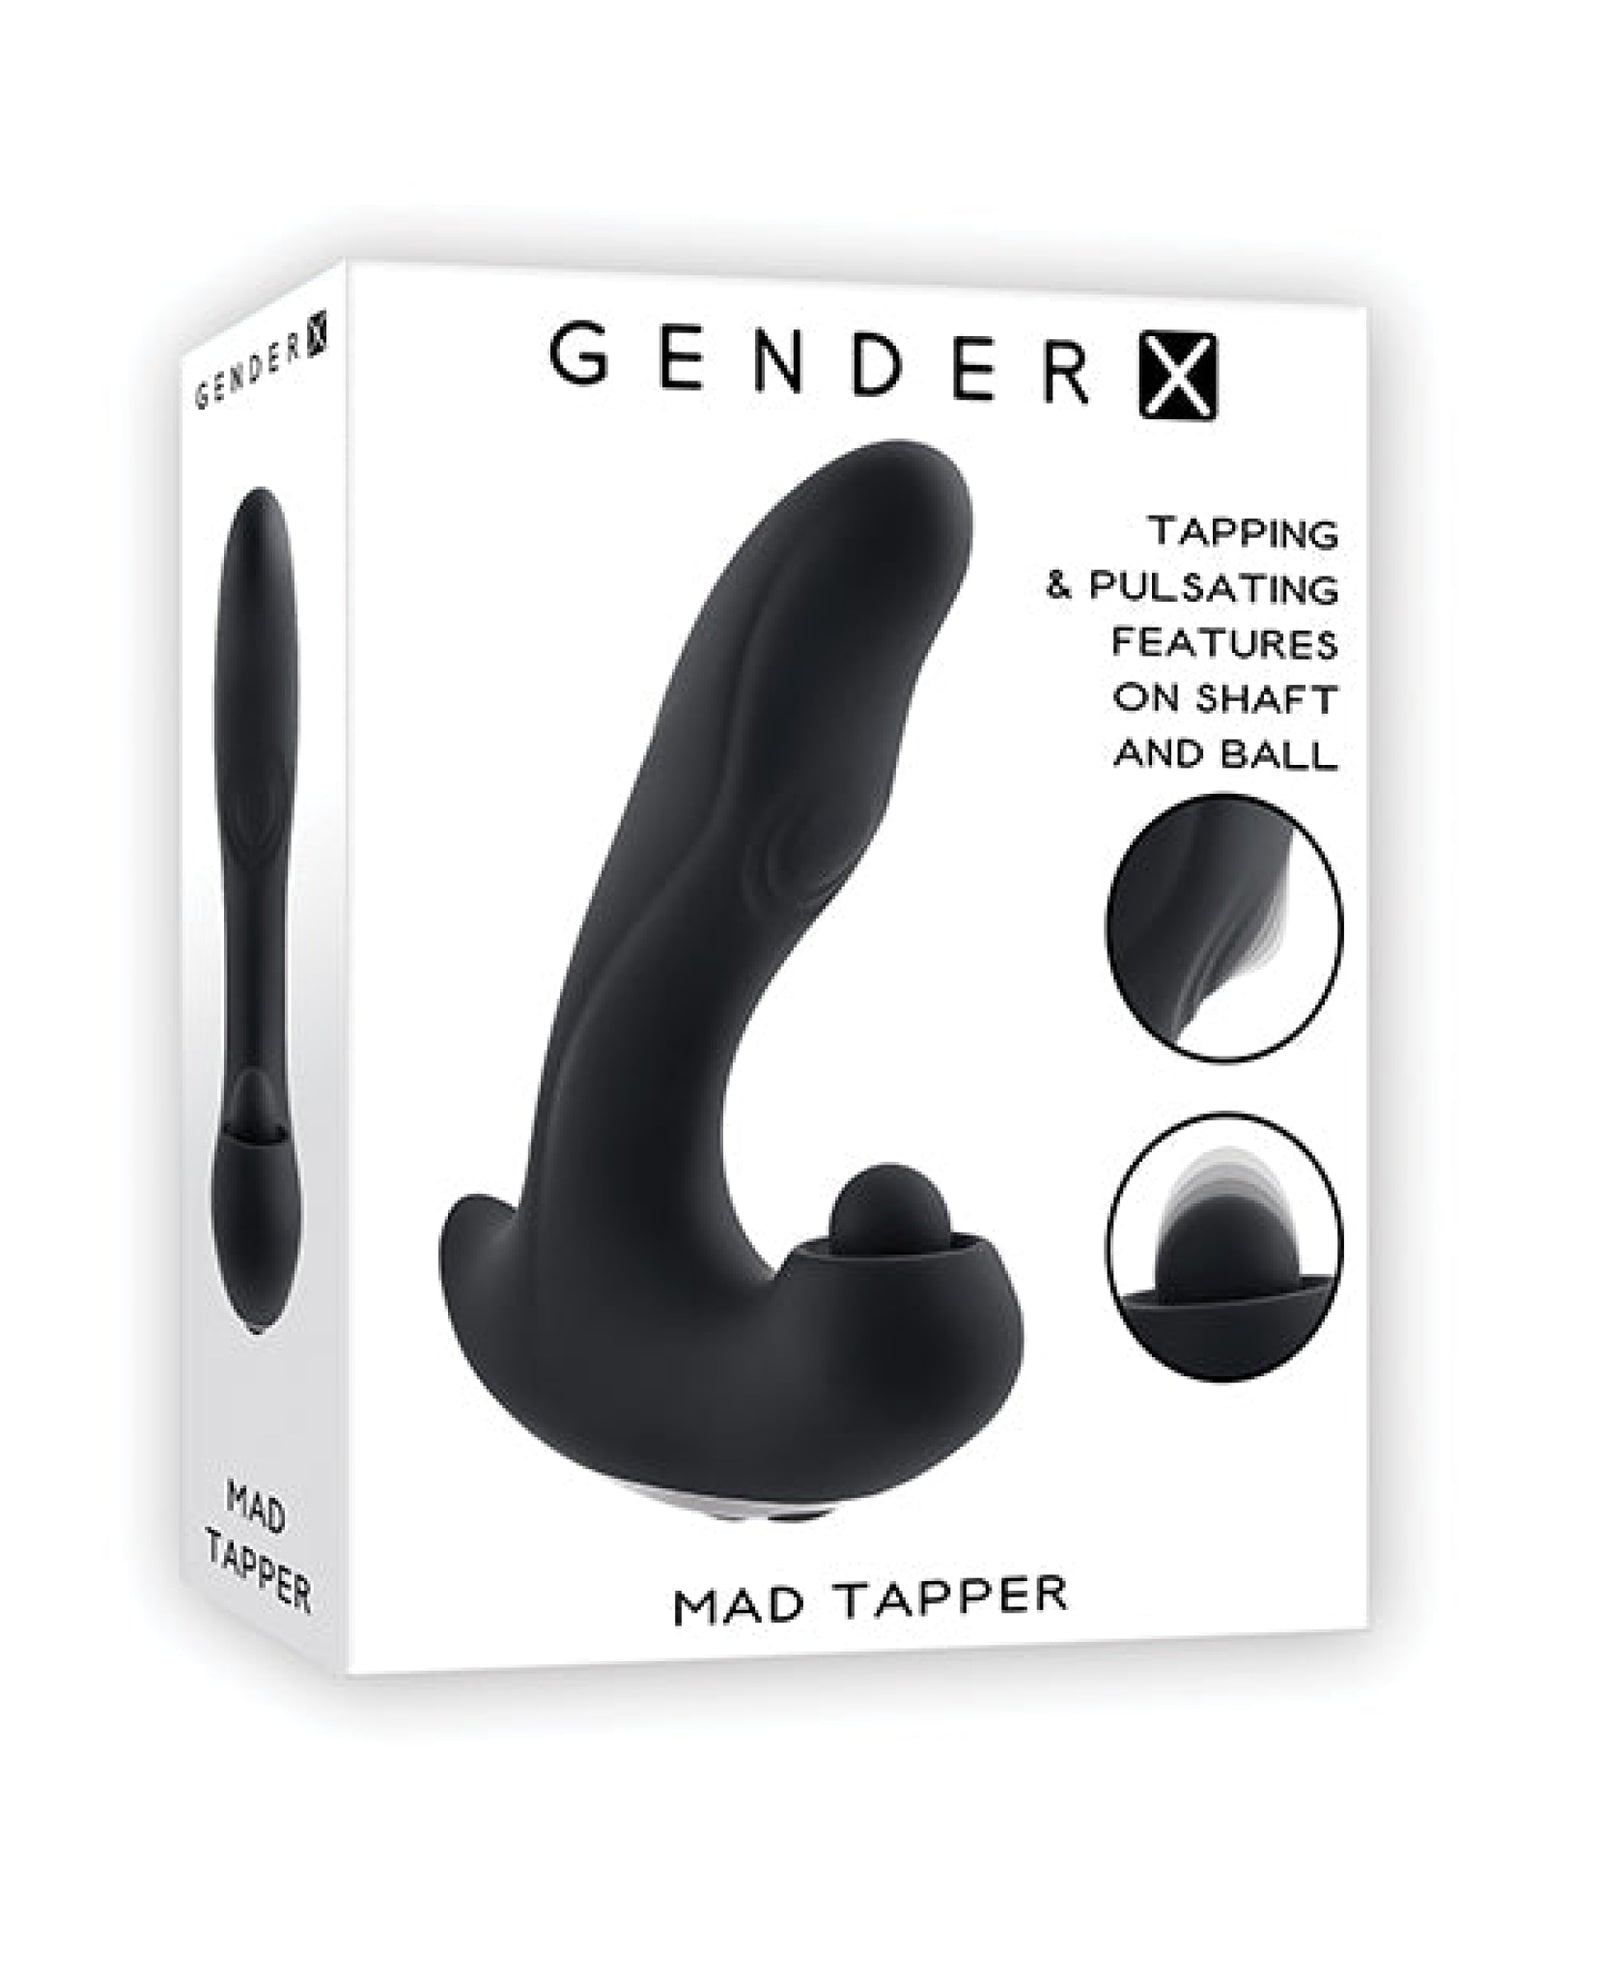 Gender X Mad Tapper - Black Gender X